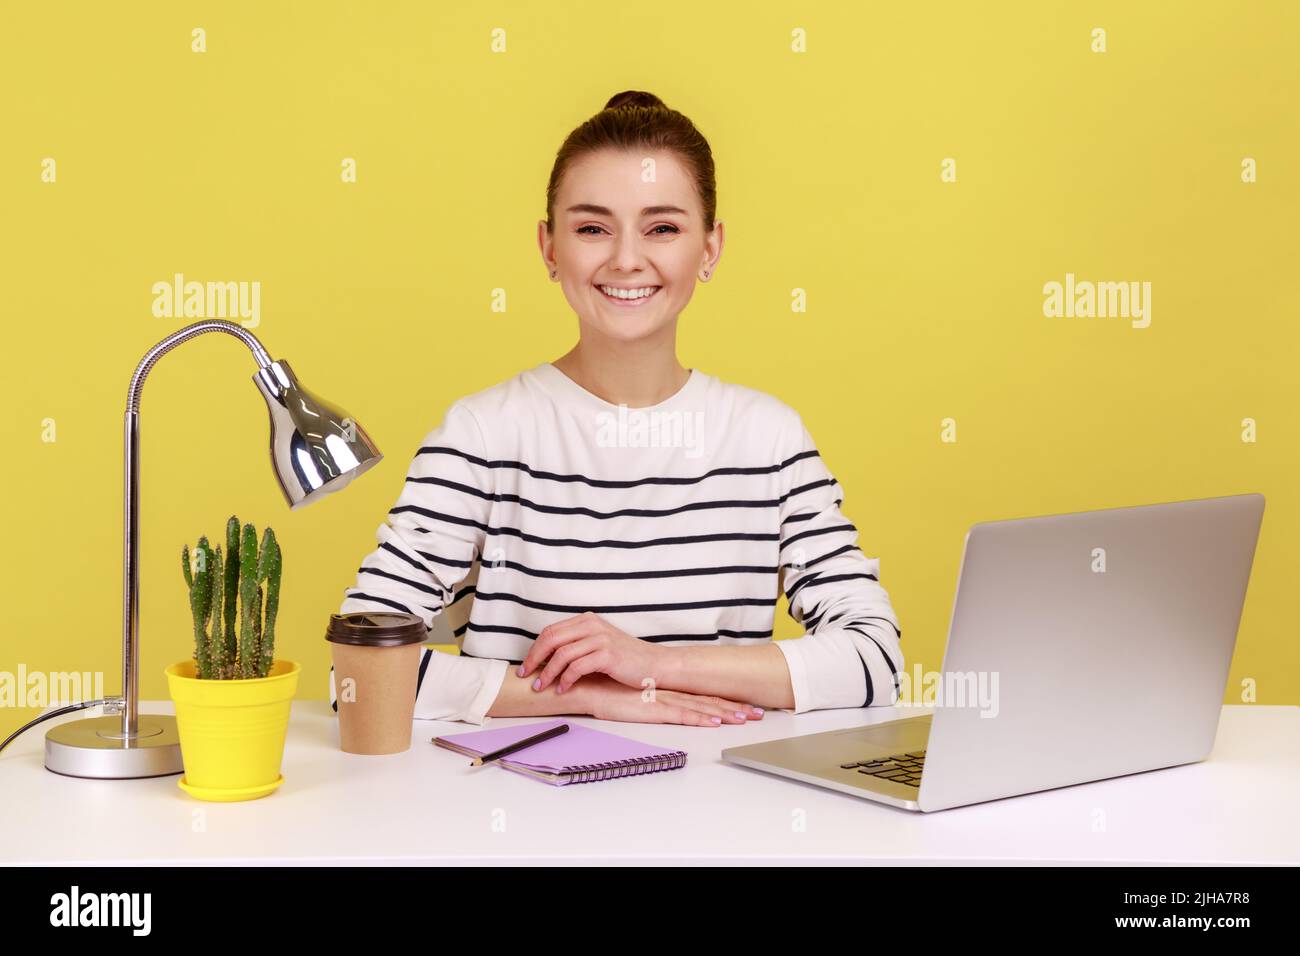 Glückliche, erfolgreiche Geschäftsfrau, die am Büroarbeitsplatz sitzt, lächelnd auf die Kamera schaut, zufrieden mit dem Job ist, optimistisch sieht. Studio-Innenaufnahme isoliert auf gelbem Hintergrund. Stockfoto